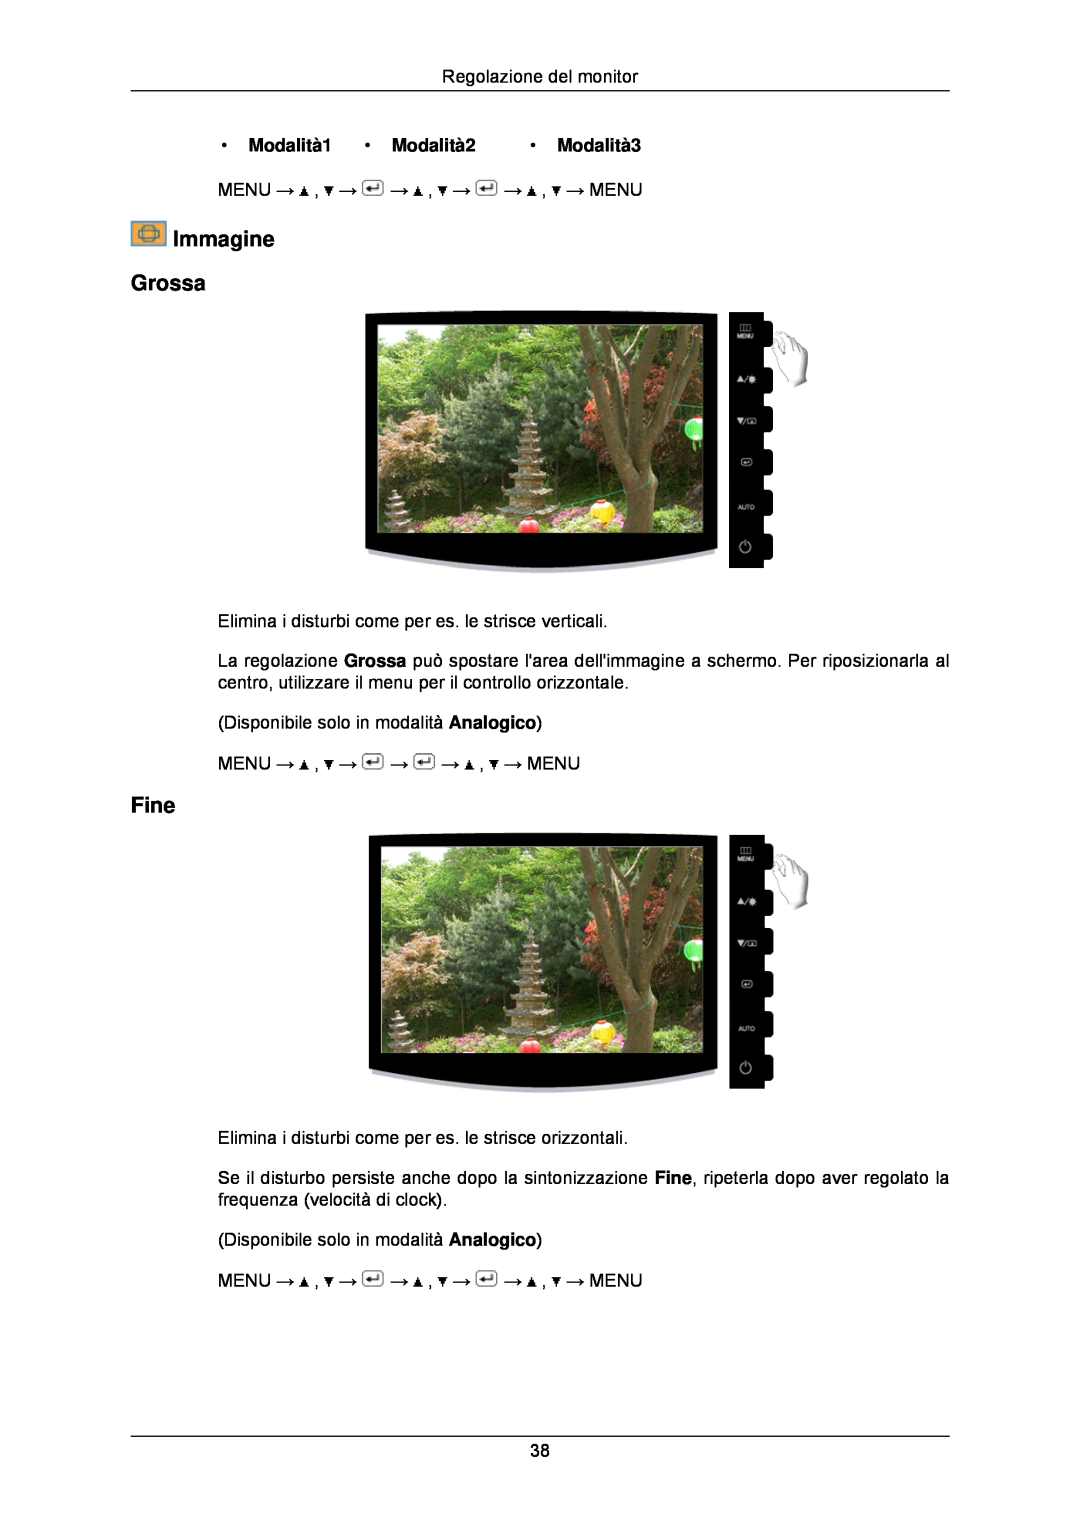 Samsung LS24CMKKFV/EN manual Immagine Grossa, Fine, Modalità1 Modalità2 Modalità3 